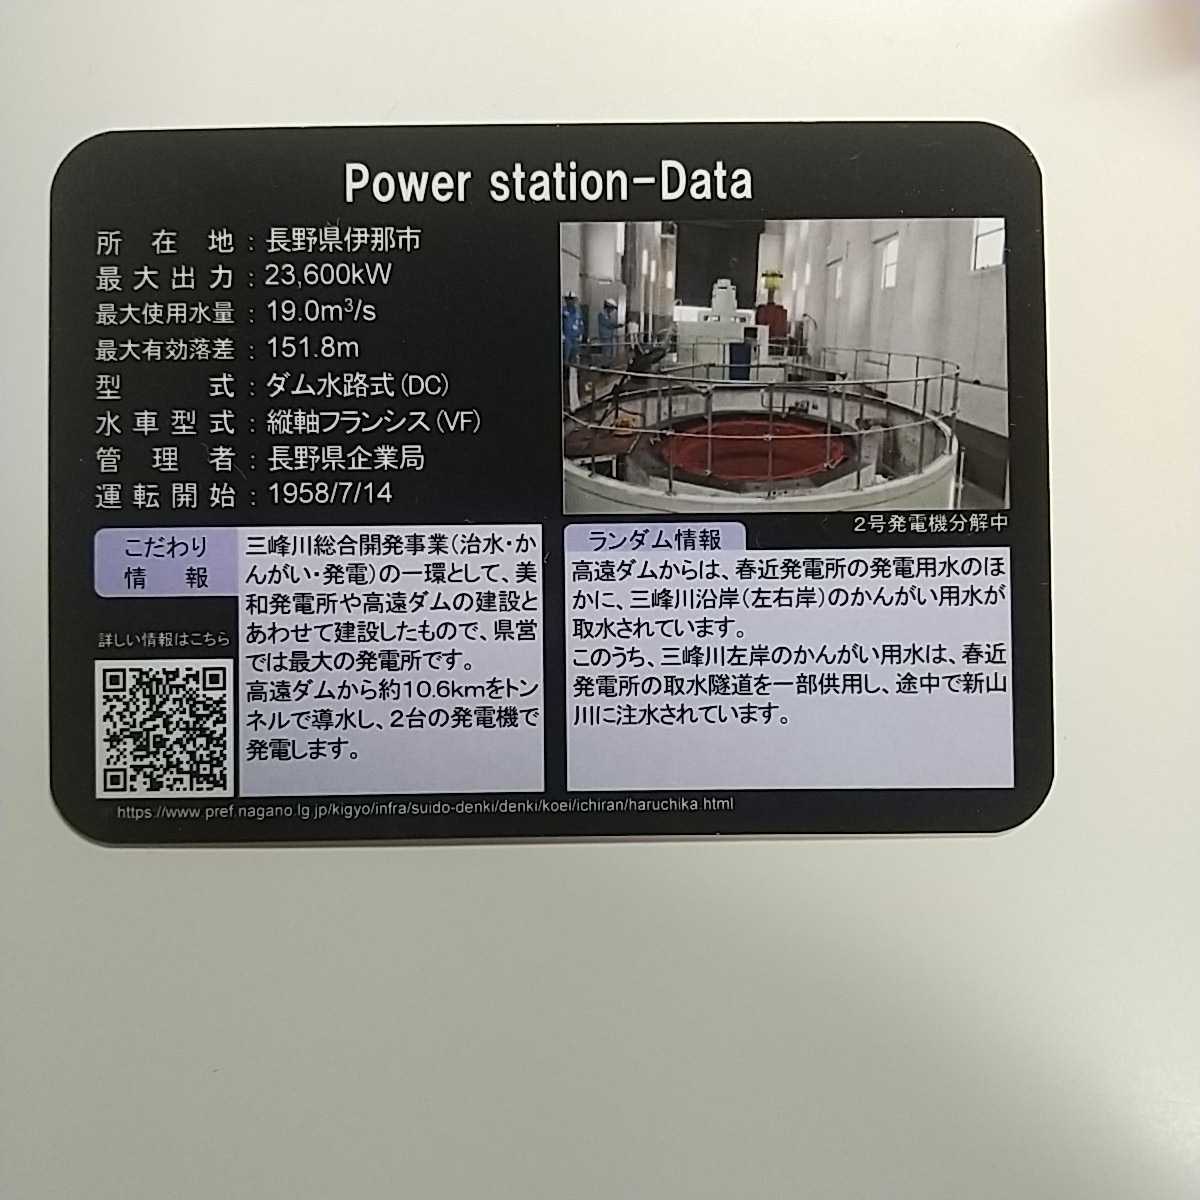 ダムカード 発電所カード 春近発電所 Ver1.0 長野県_画像2